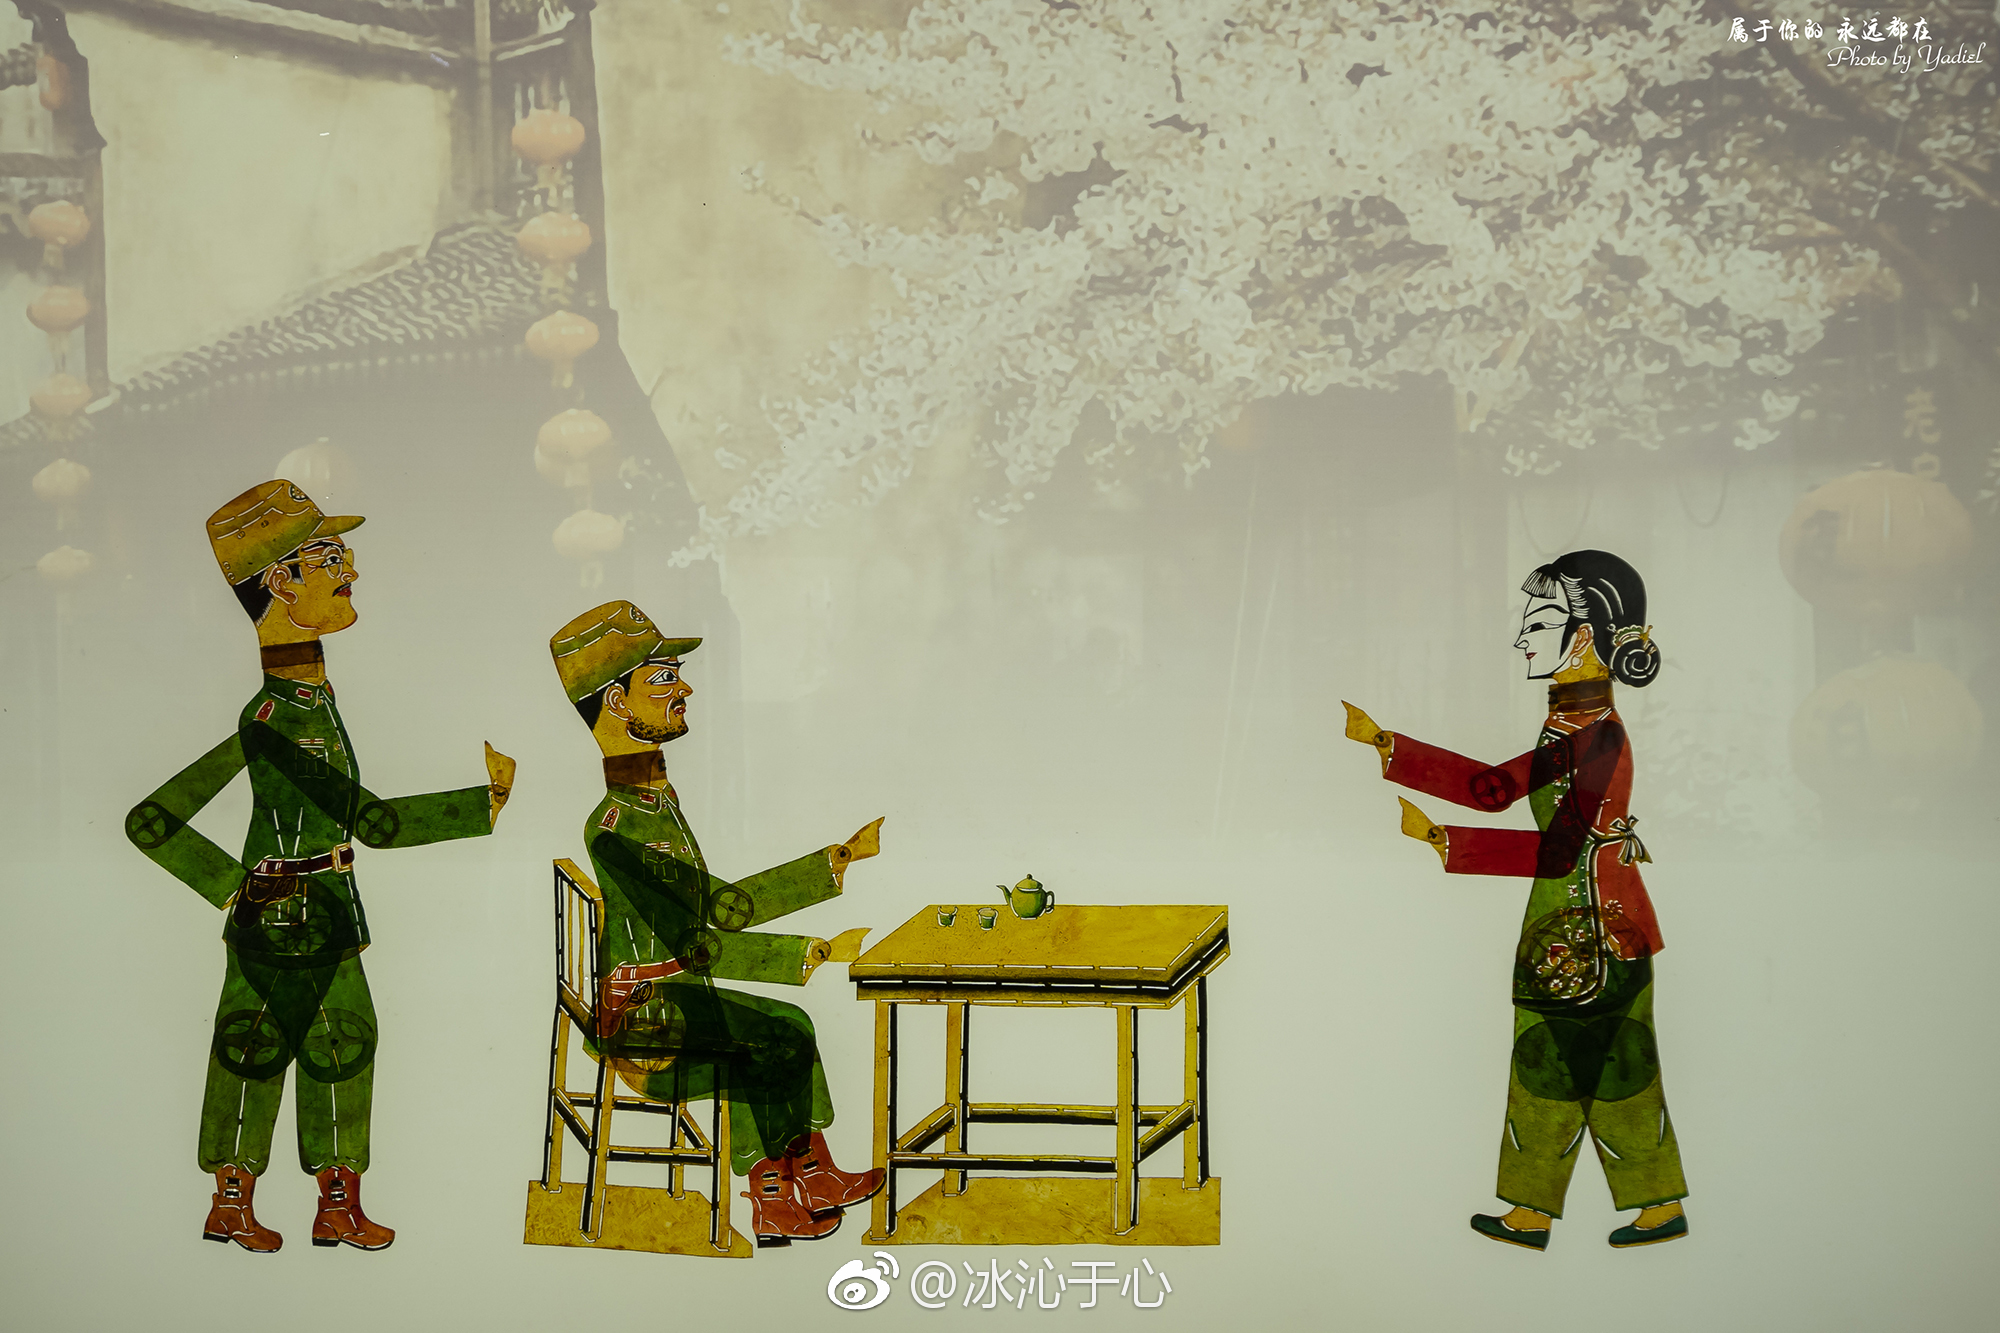 展讯 | 「光影世象——中国美术学院民艺博物馆馆藏皮影展」开展在即，敬请期待！祝朋友们新年吉祥如意！_展览